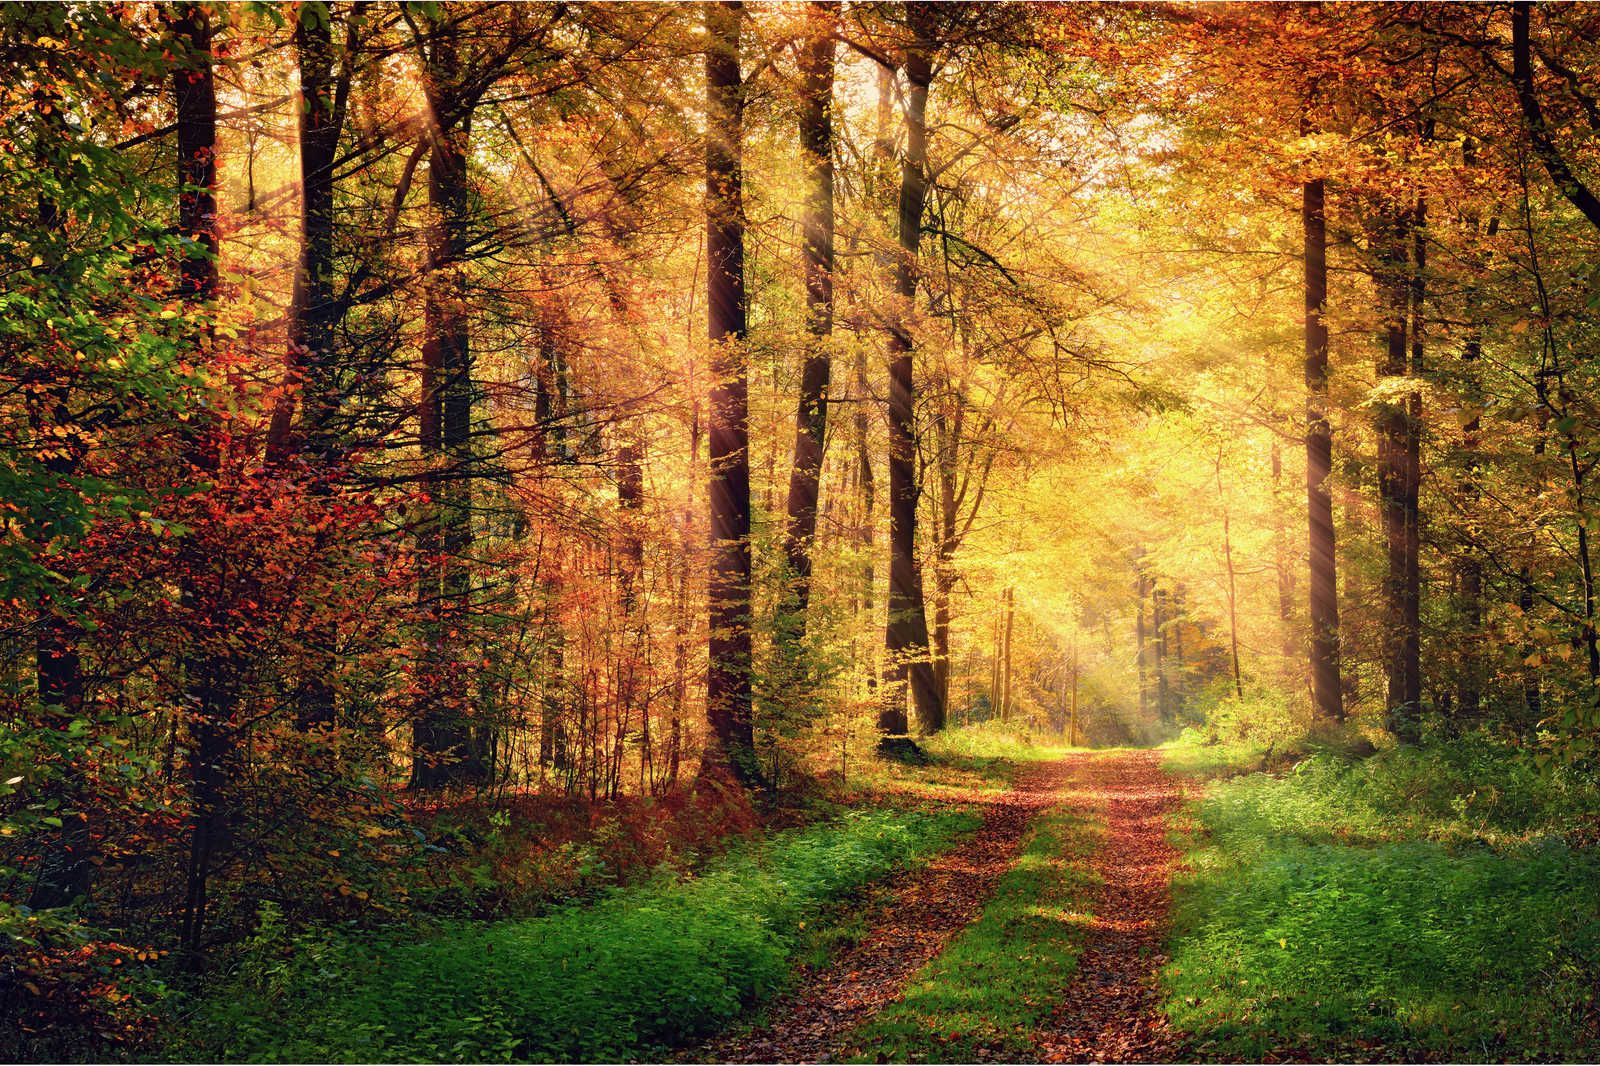             Toile Chemin forestier un jour d'automne avec soleil - 0,90 m x 0,60 m
        